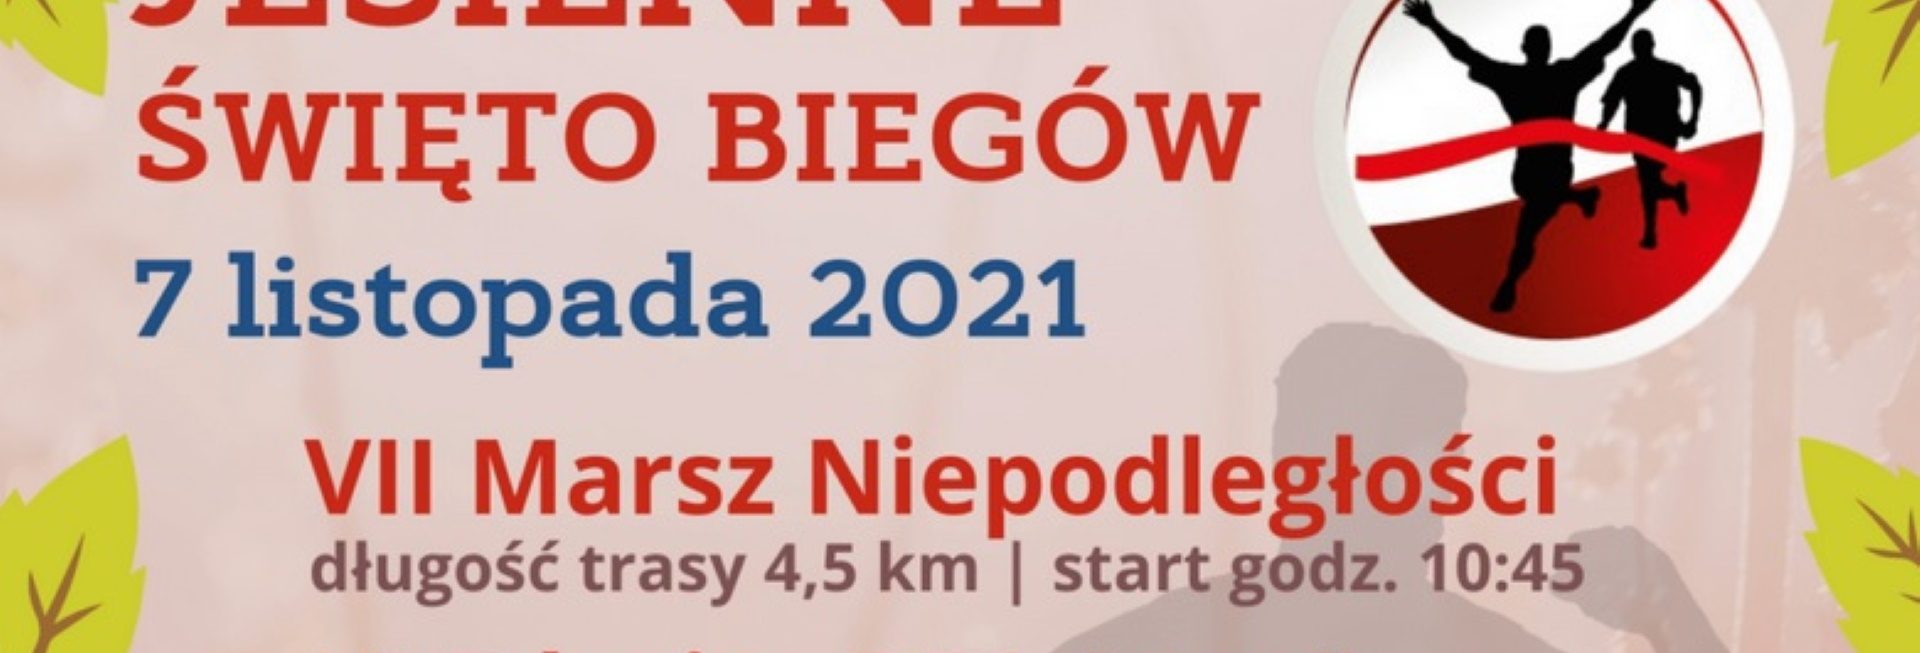 Plakat graficzny zapraszający do Węgorzewa na coroczną imprezę biegową Jesienne Święto Biegów VI edycja BiegamBoLubię LASY - Węgorzewo 2021.